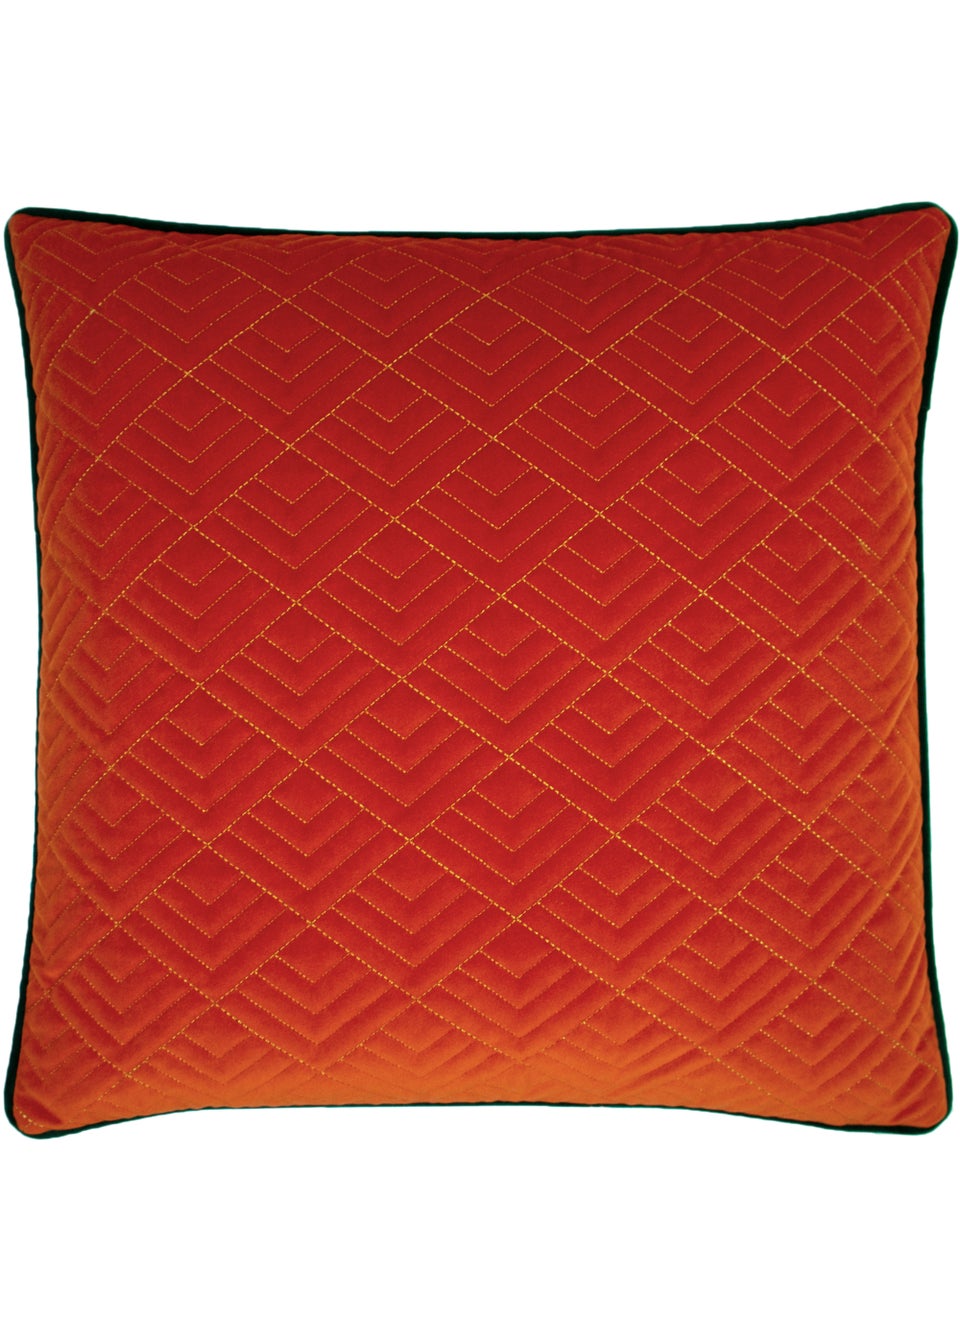 furn. Deco Embroidered Geometric Cushion (50cm x 50cm x 8cm)